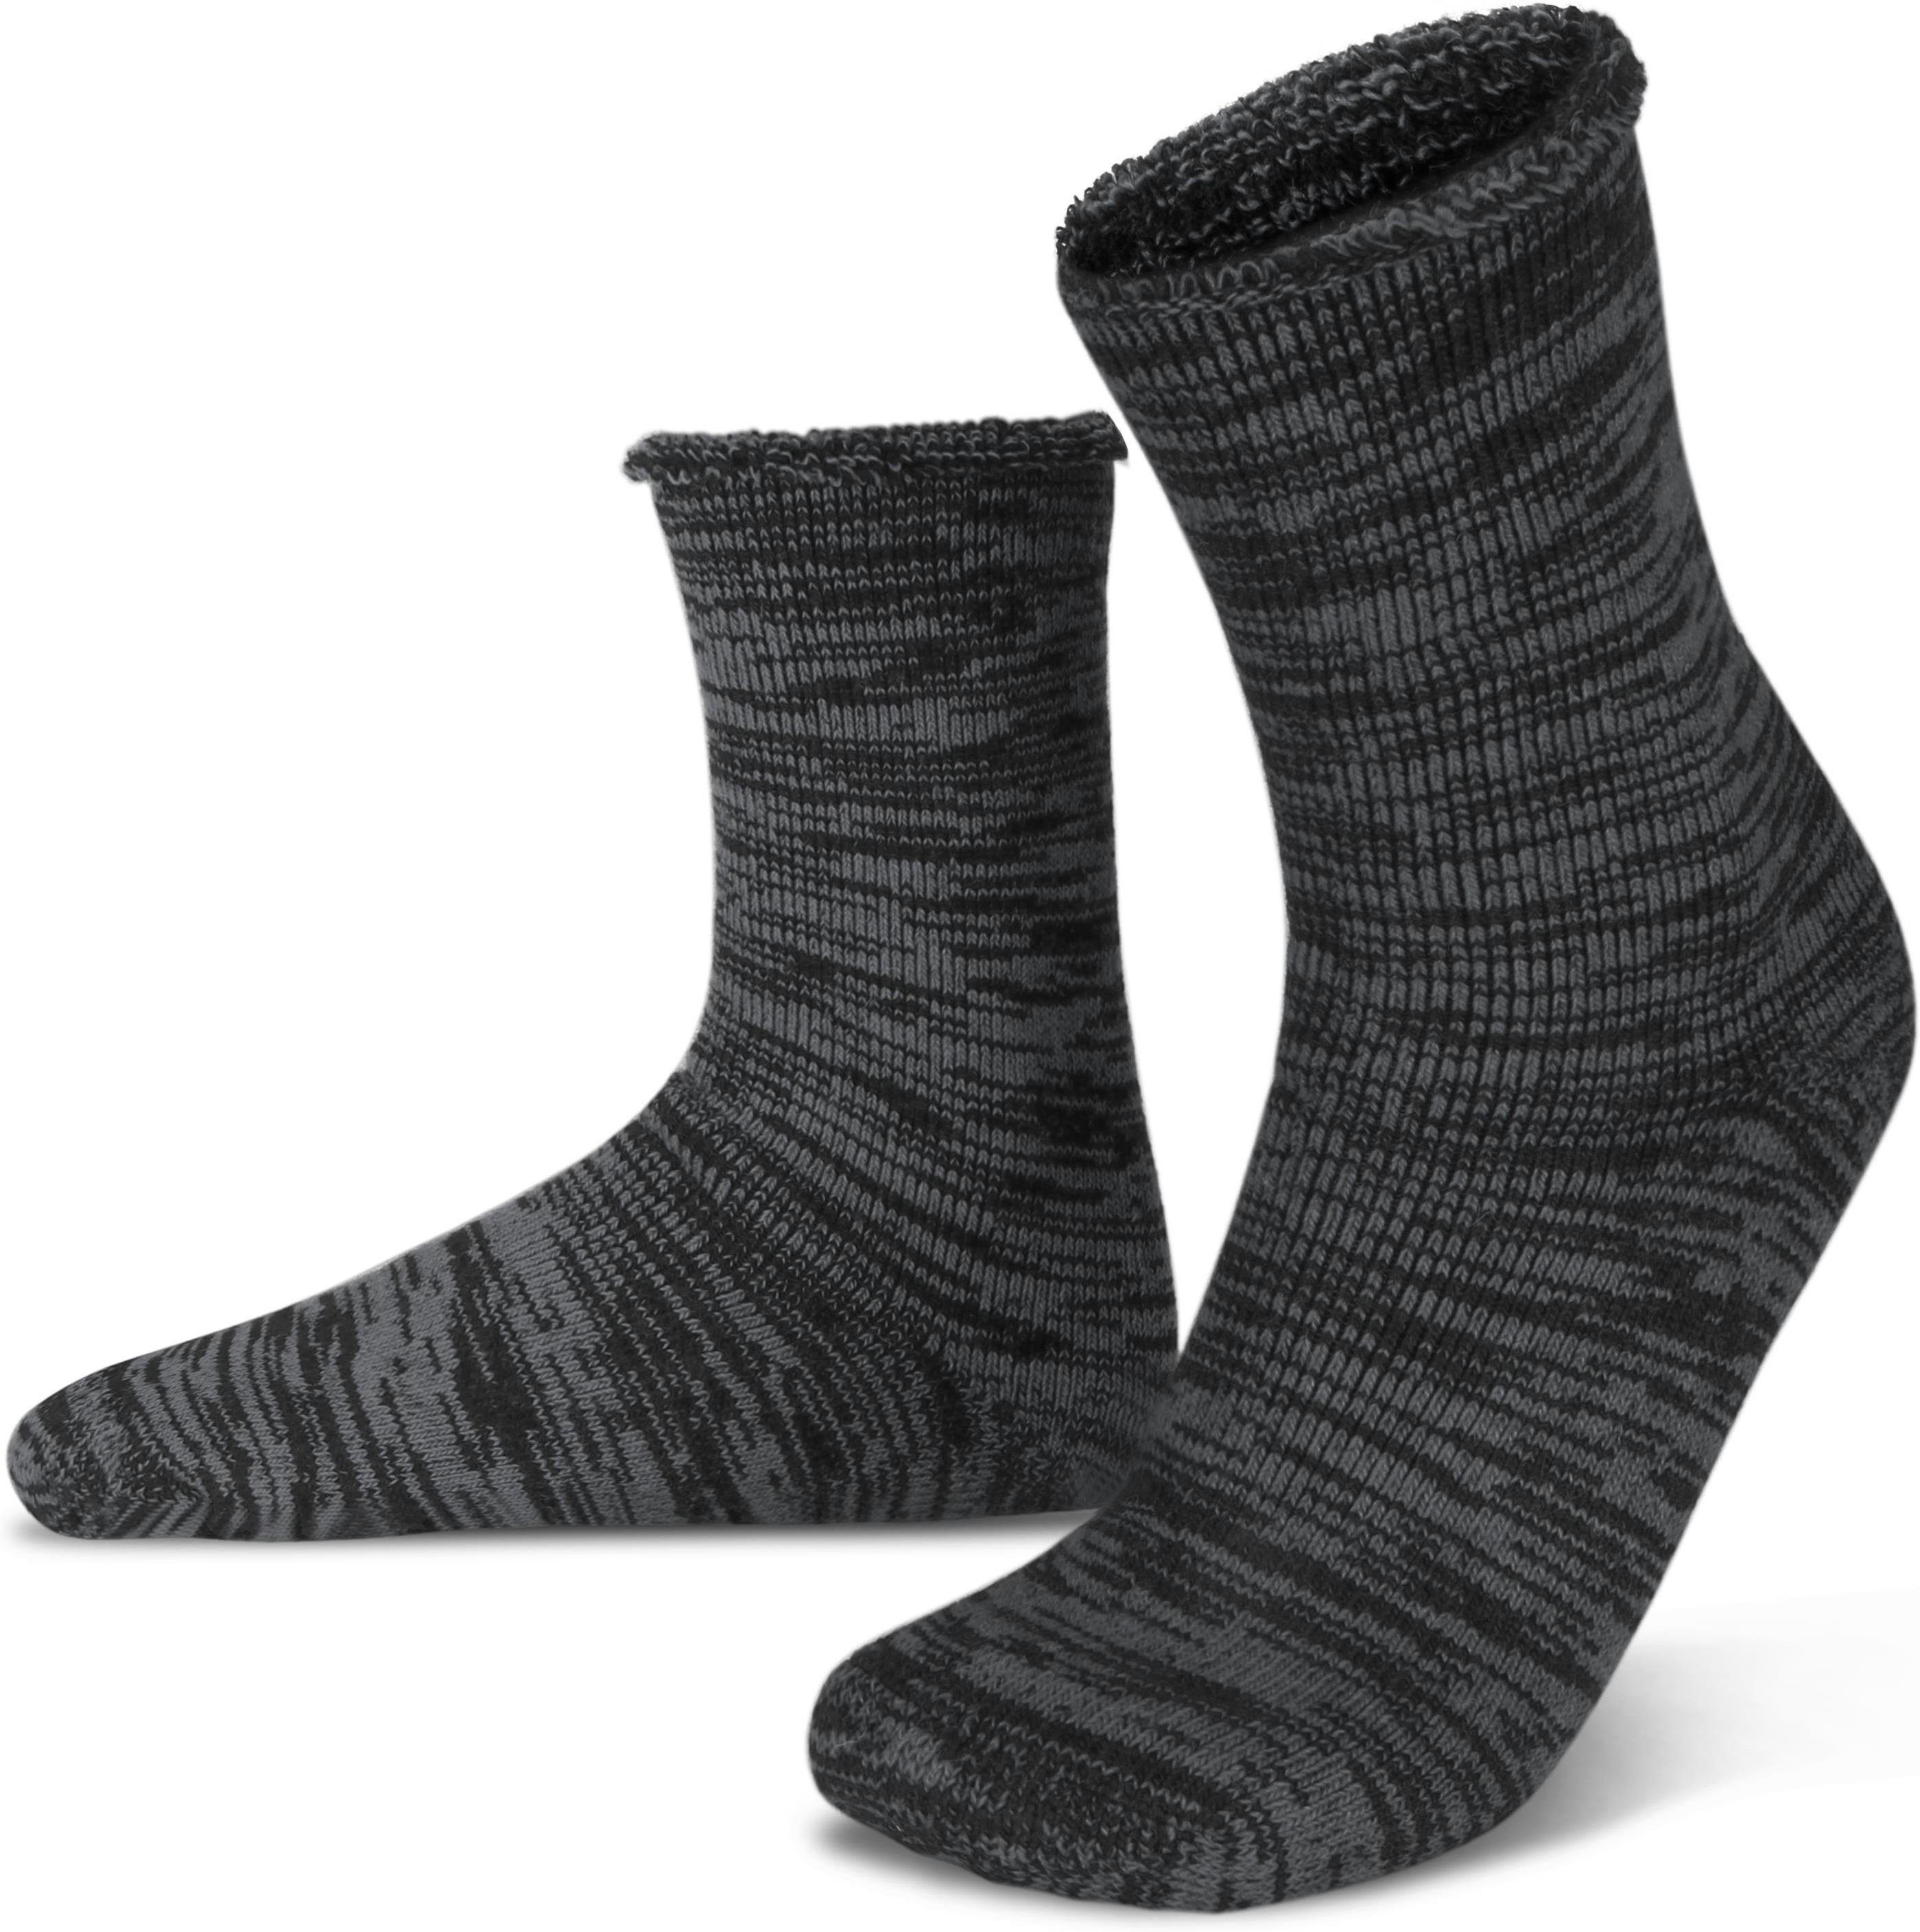 Polar Husky Thermosocken Farbige Vollplüsch-Socken mit Wolle durchgehend gefüttert Grau/Schwarz